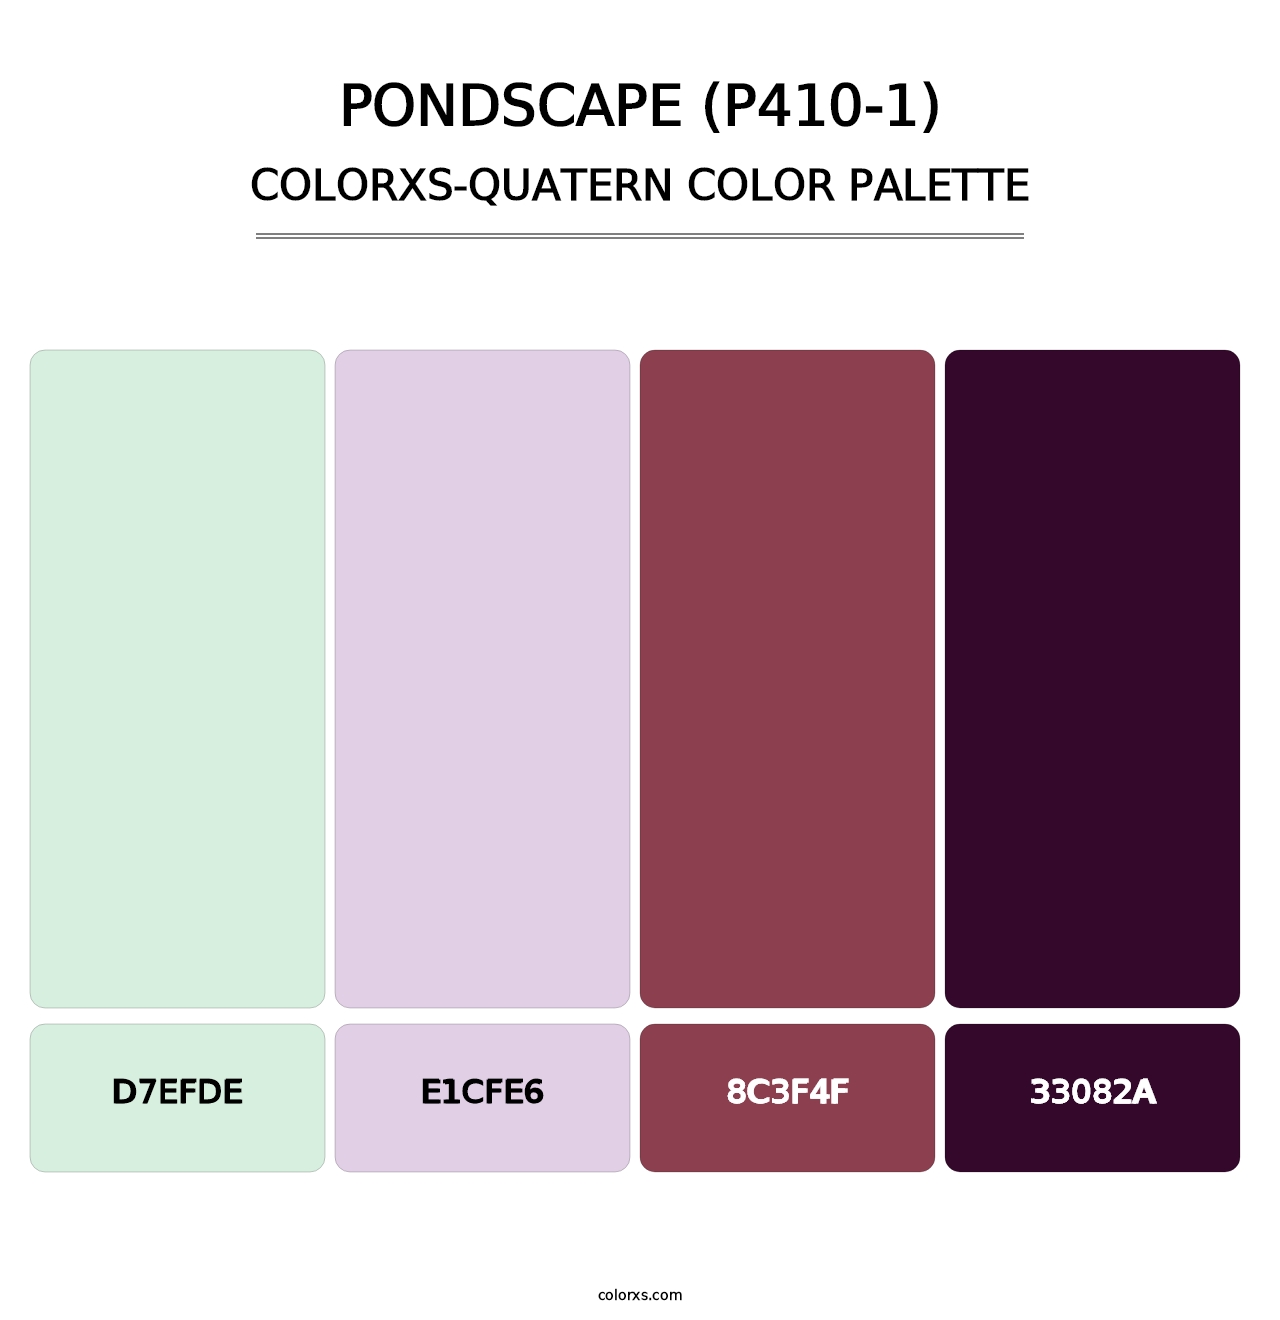 Pondscape (P410-1) - Colorxs Quatern Palette